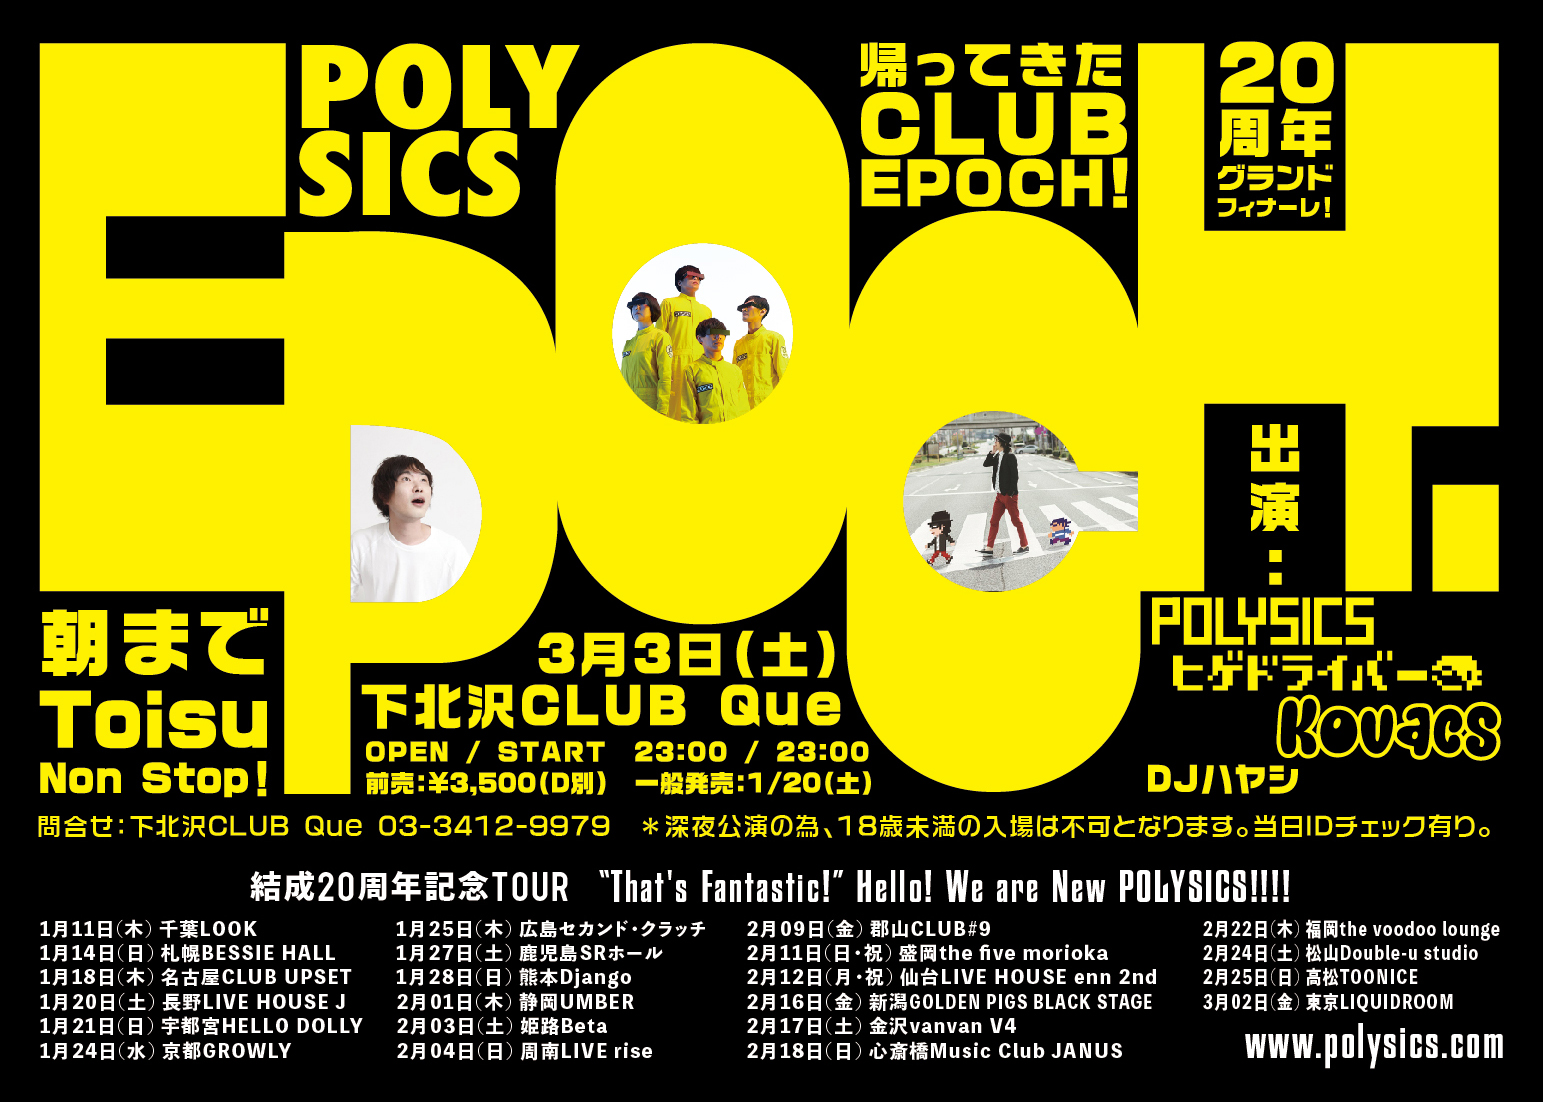 CLUB EPOCH!_flyer.jpg